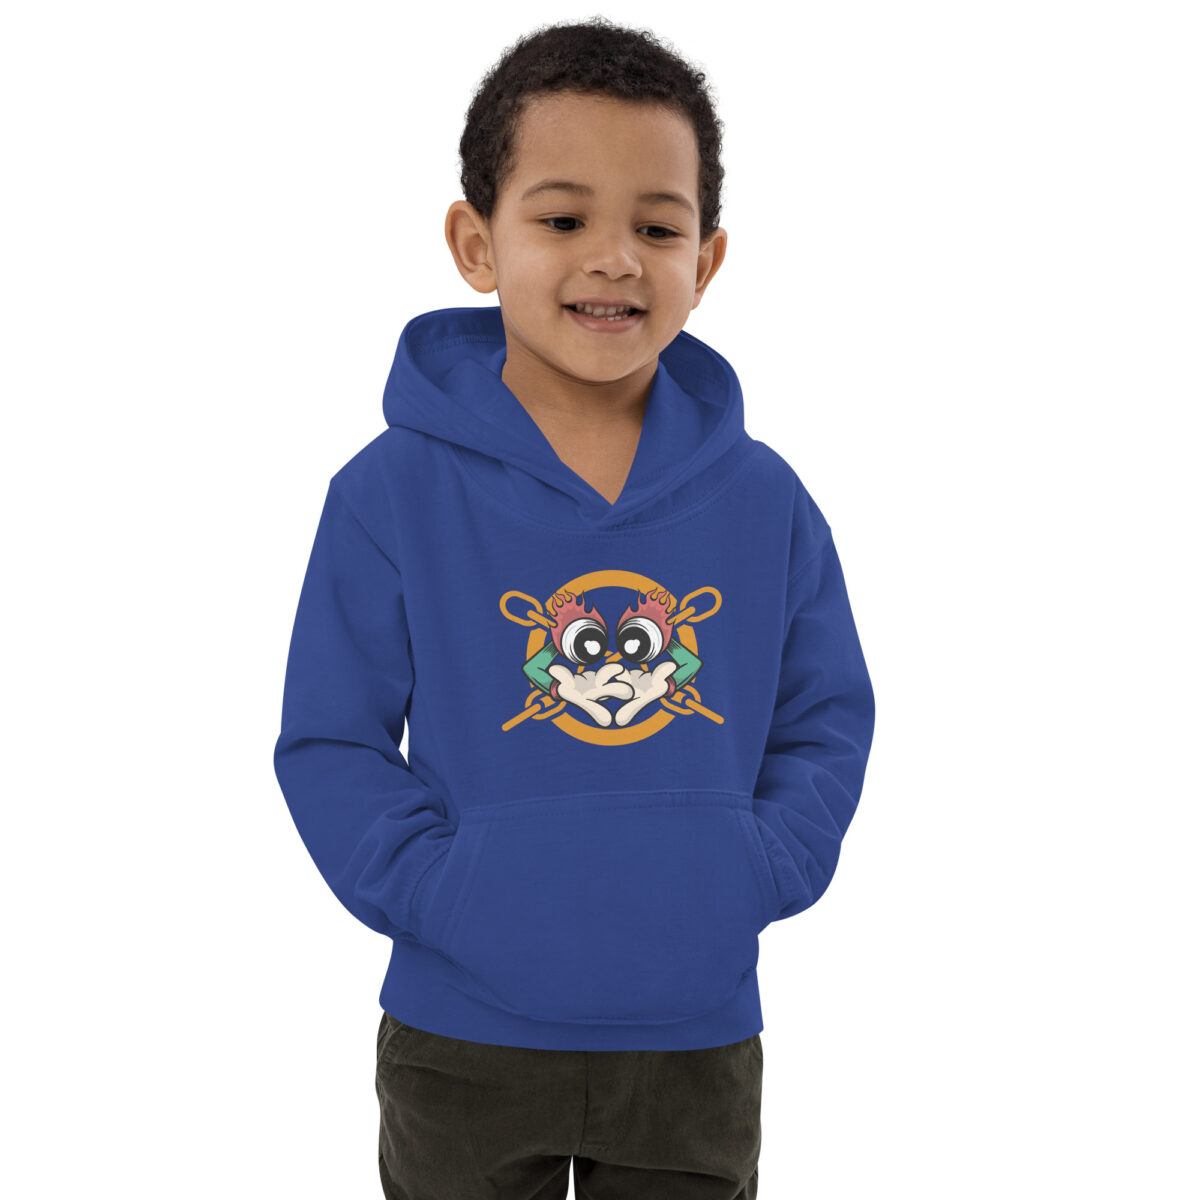 kids hoodie royal blue front 6475c4d47d57e